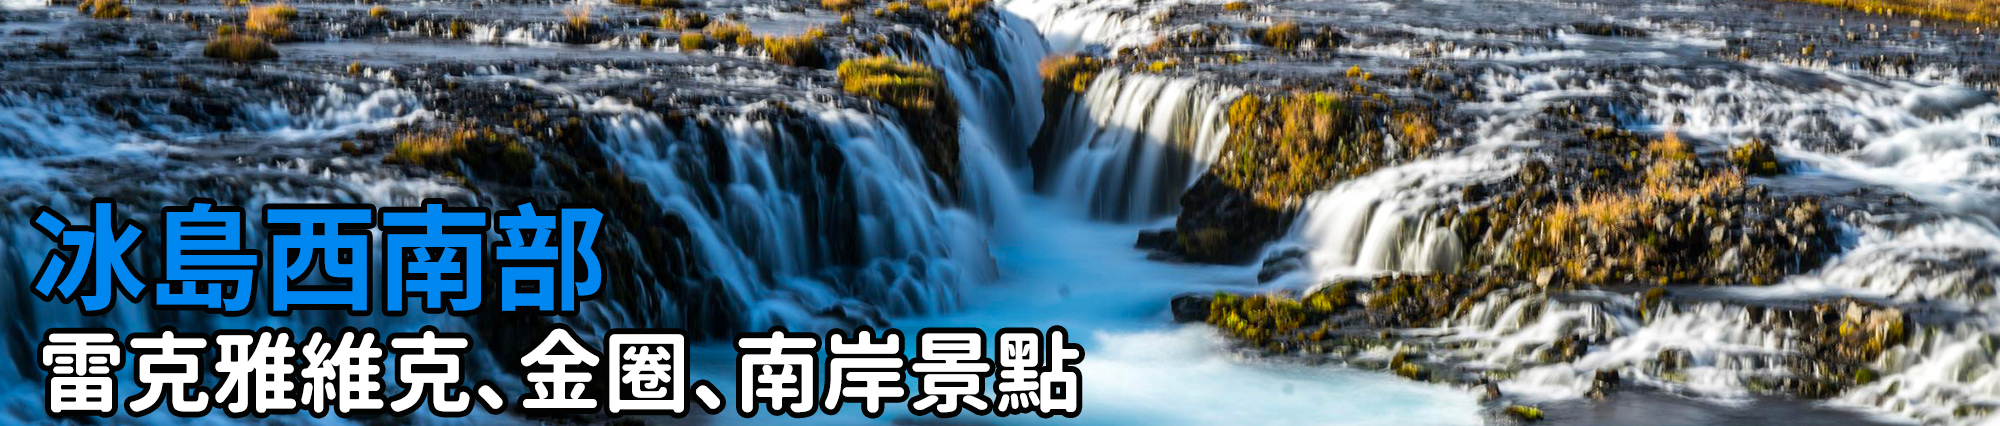 [冰島景點] 冰島西峽灣景點 - 丁堅地瀑布 Dynjandi